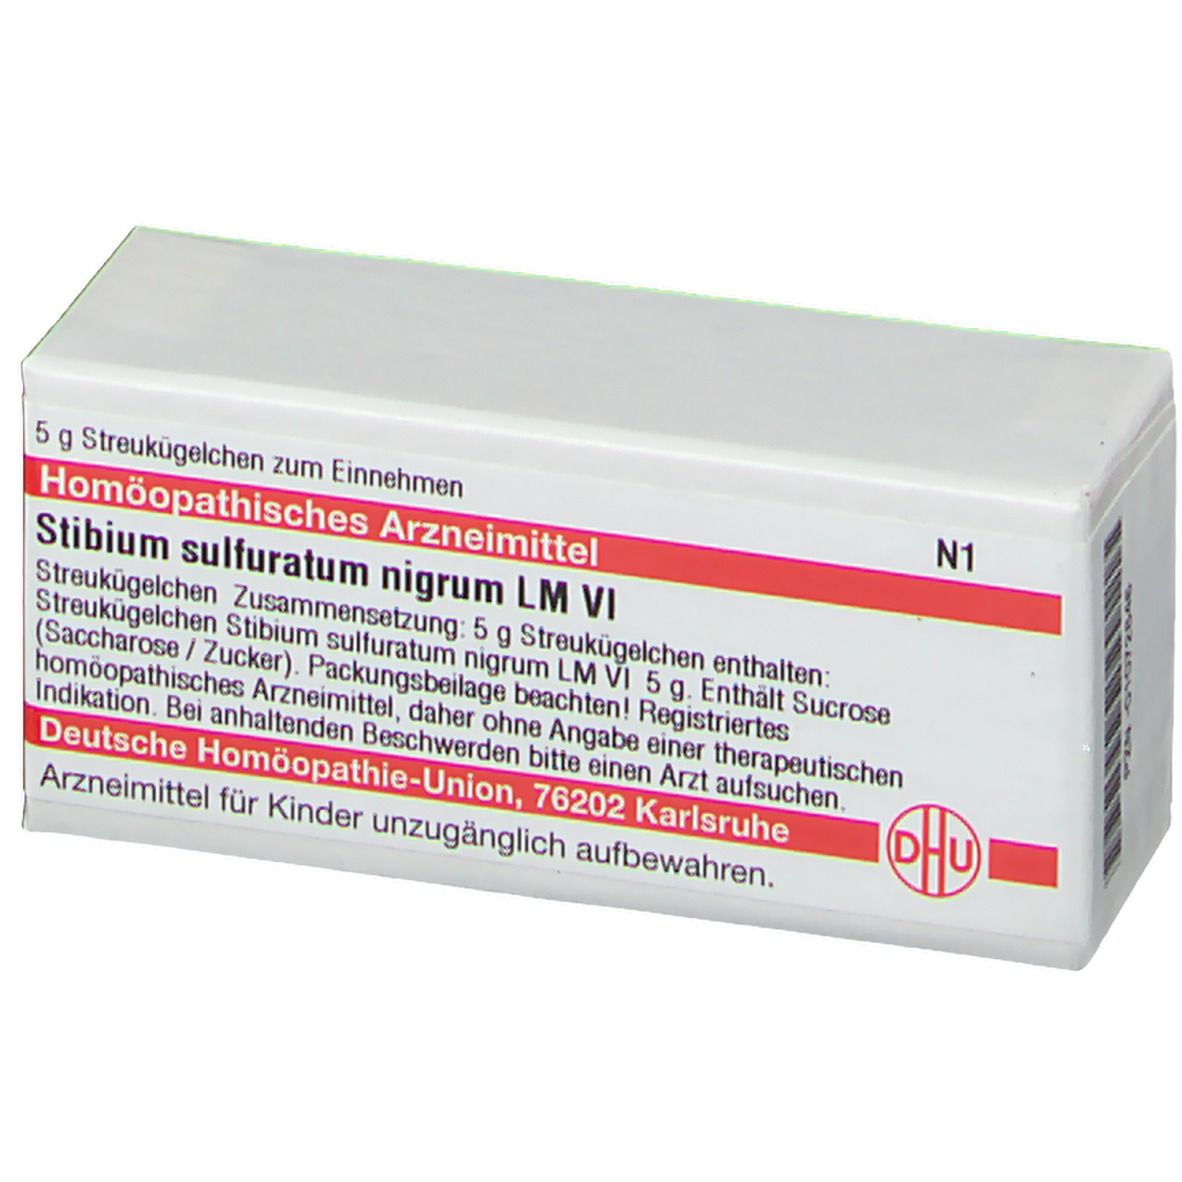 DHU Stibium Sulfuratum Nigrum LM VI